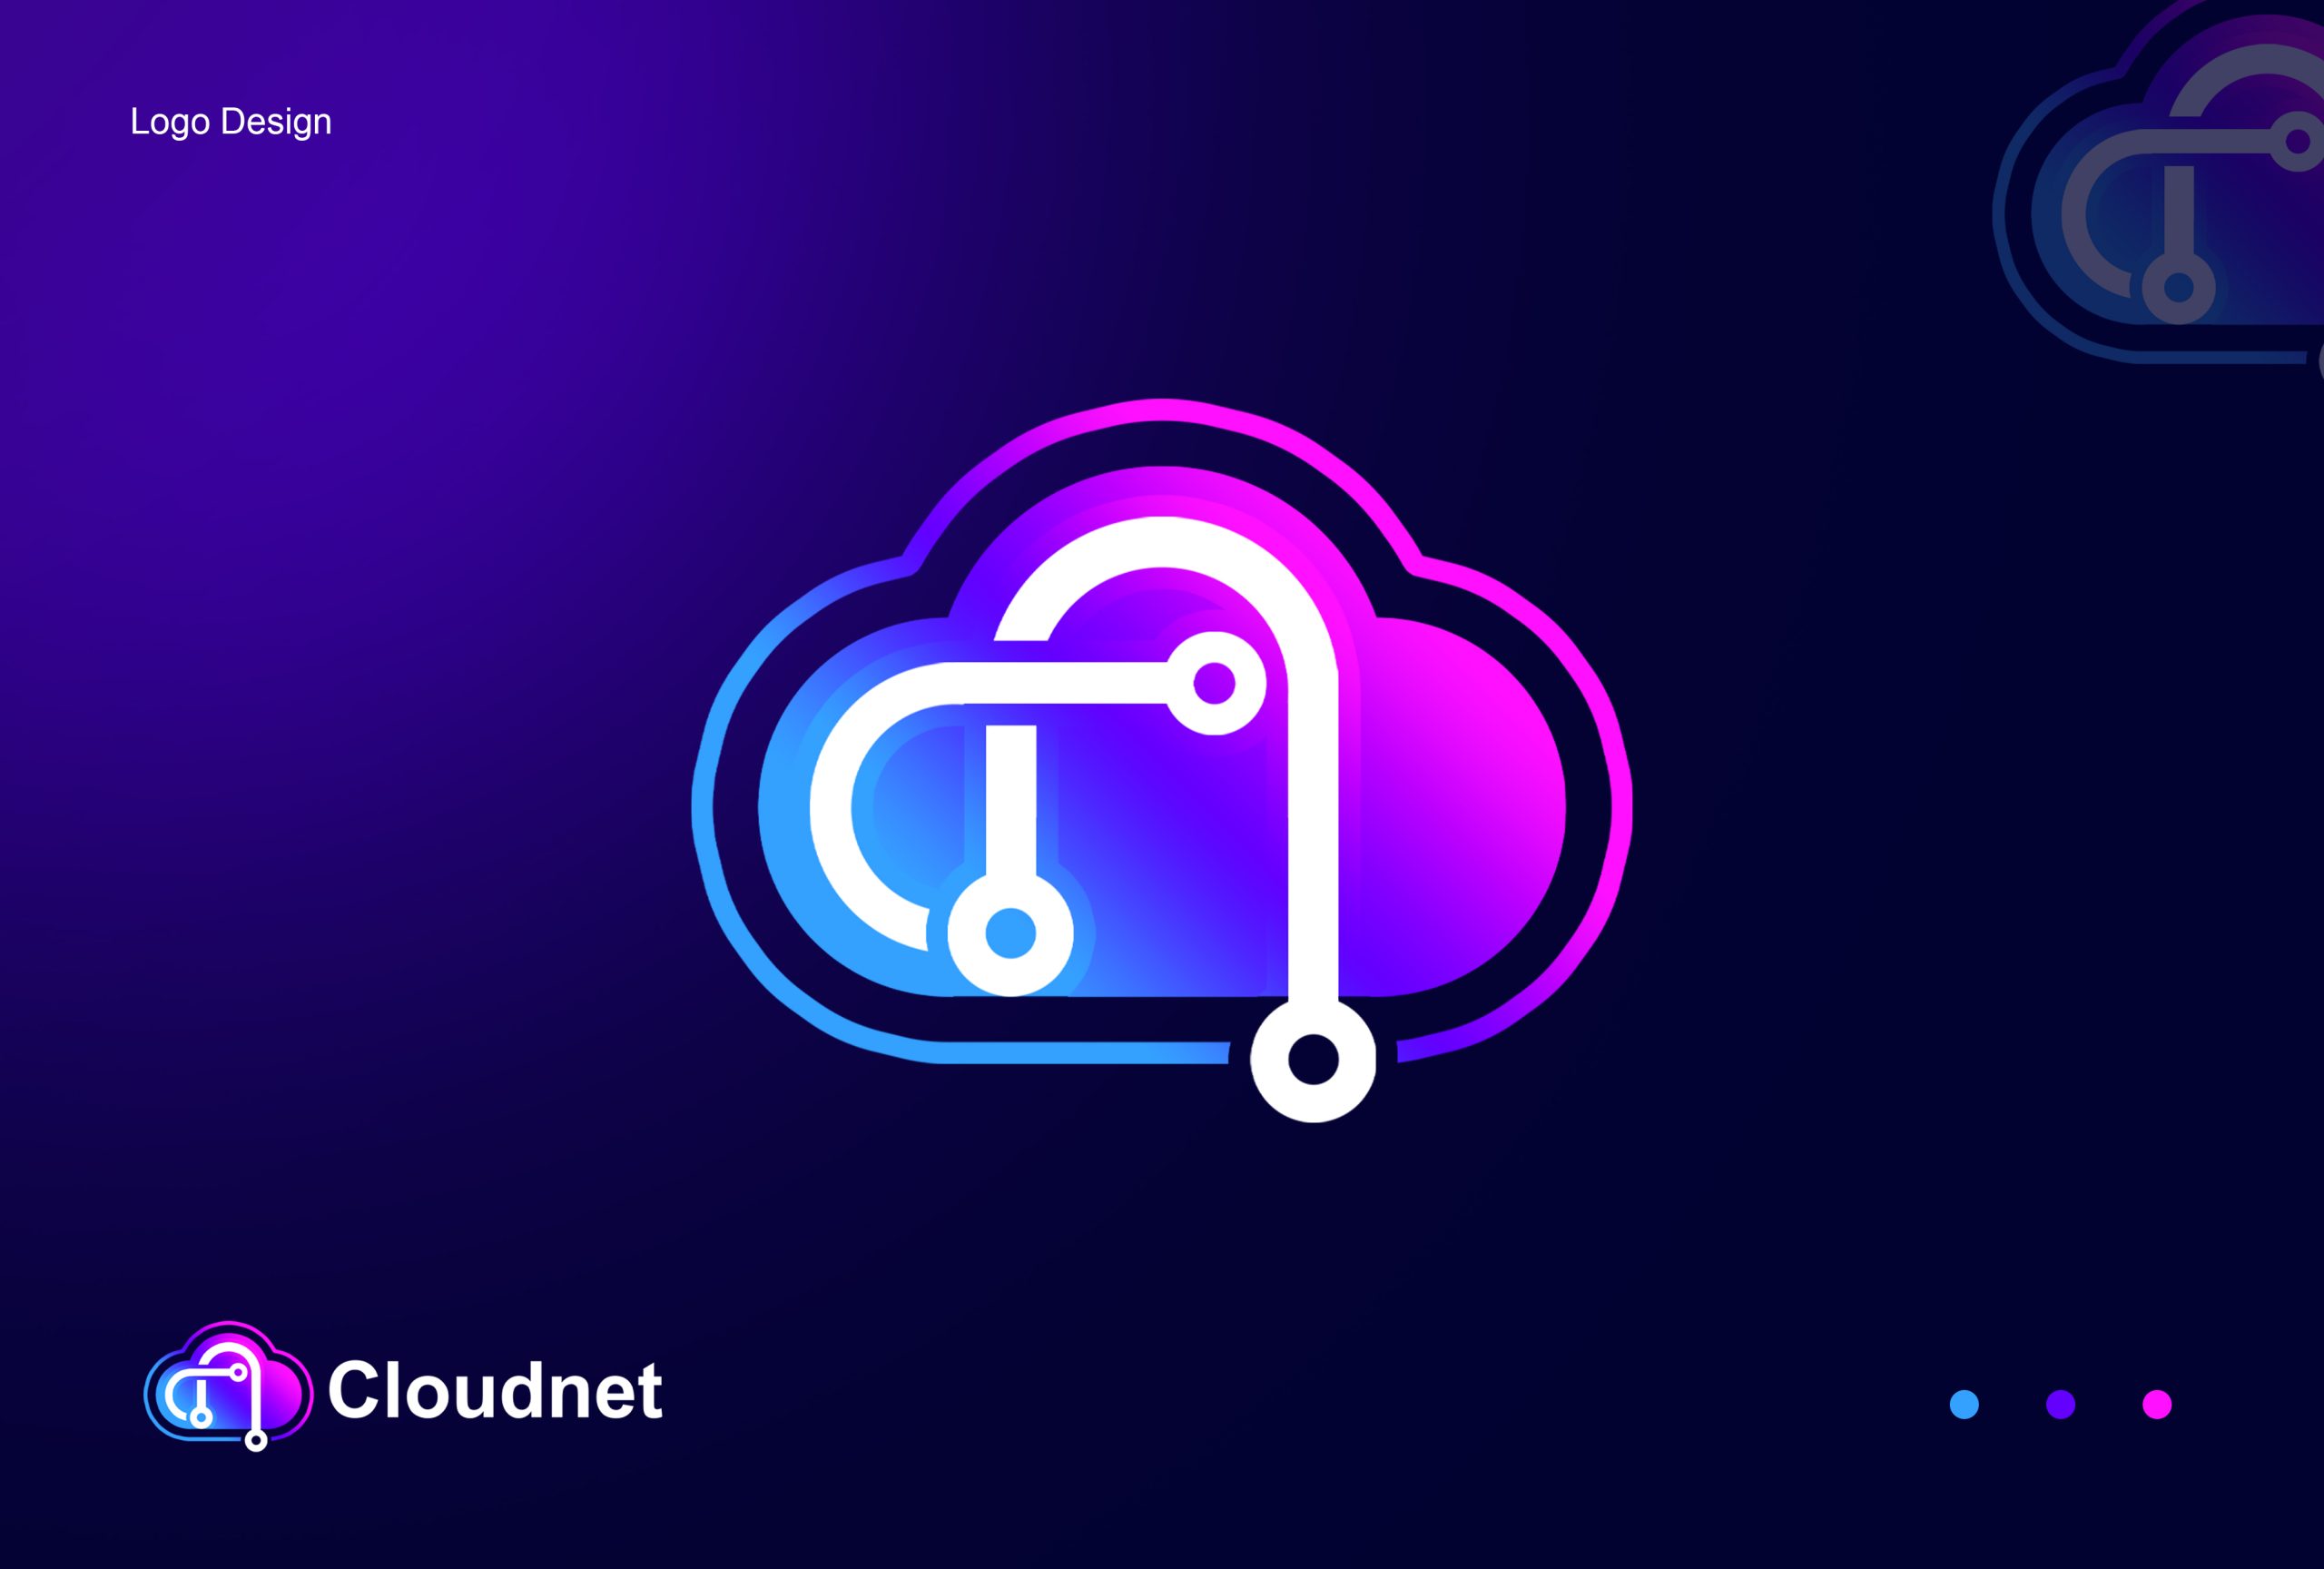 Cloudnet Logo Design Download